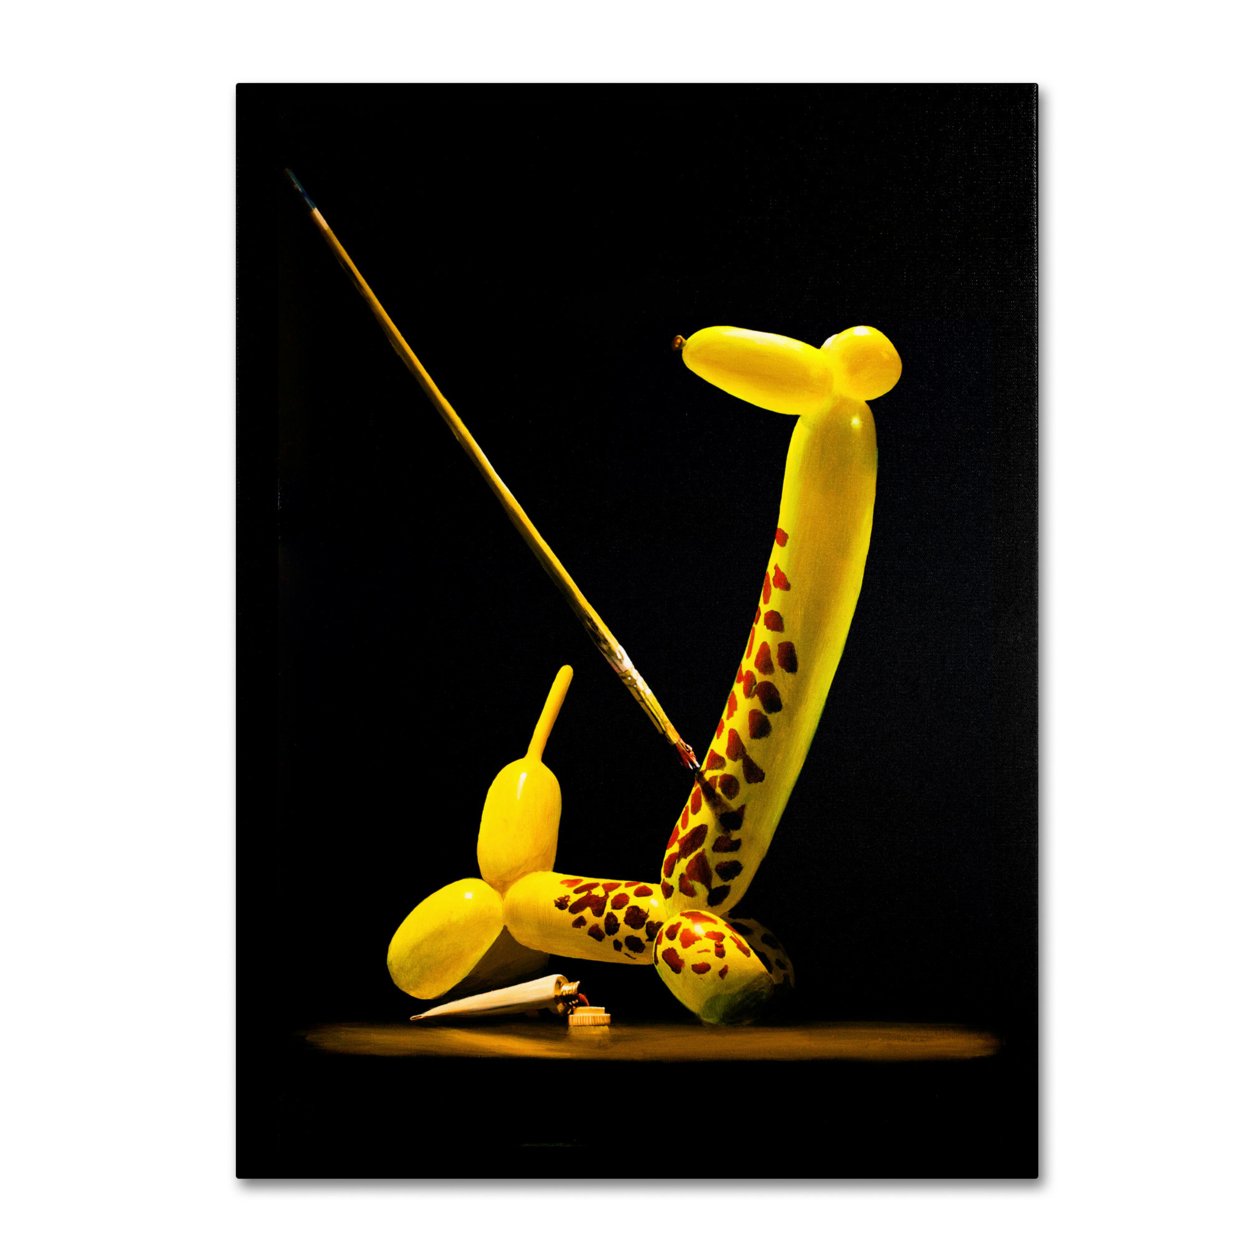 Roderick Stevens 'Balloon Giraffe' Canvas Wall Art 35 X 47 Inches